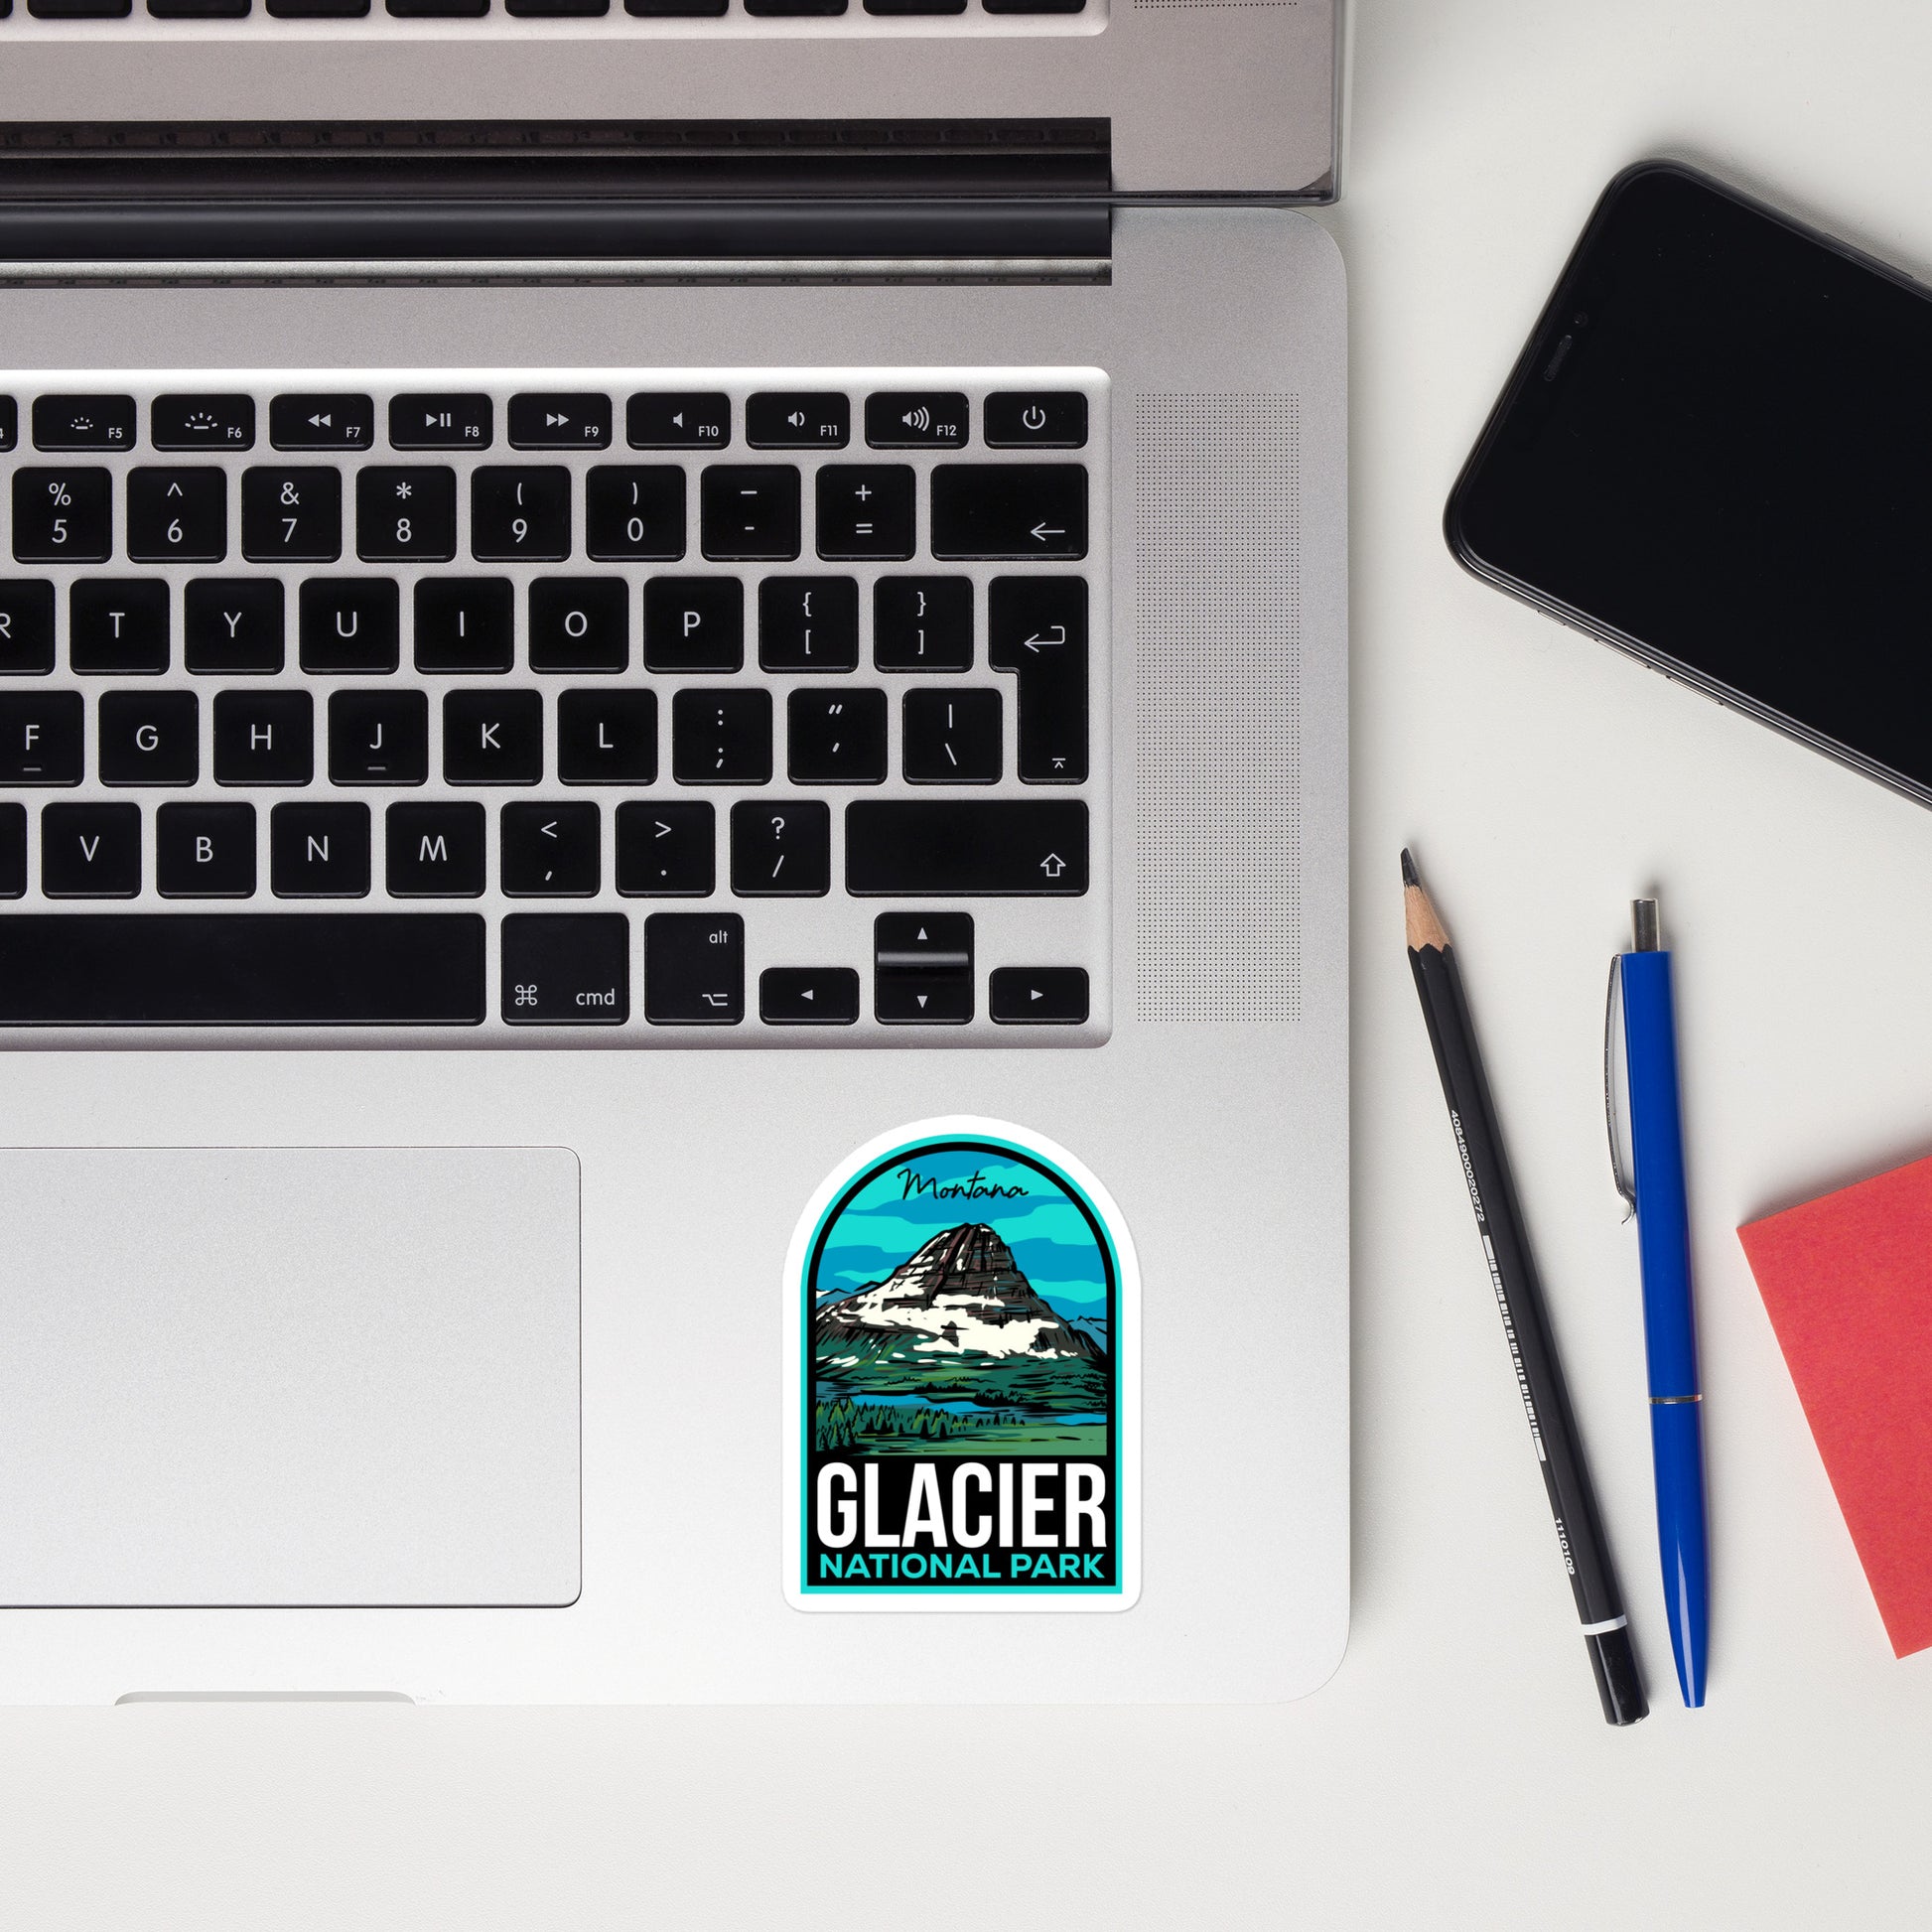 A sticker of Glacier National Park on a laptop